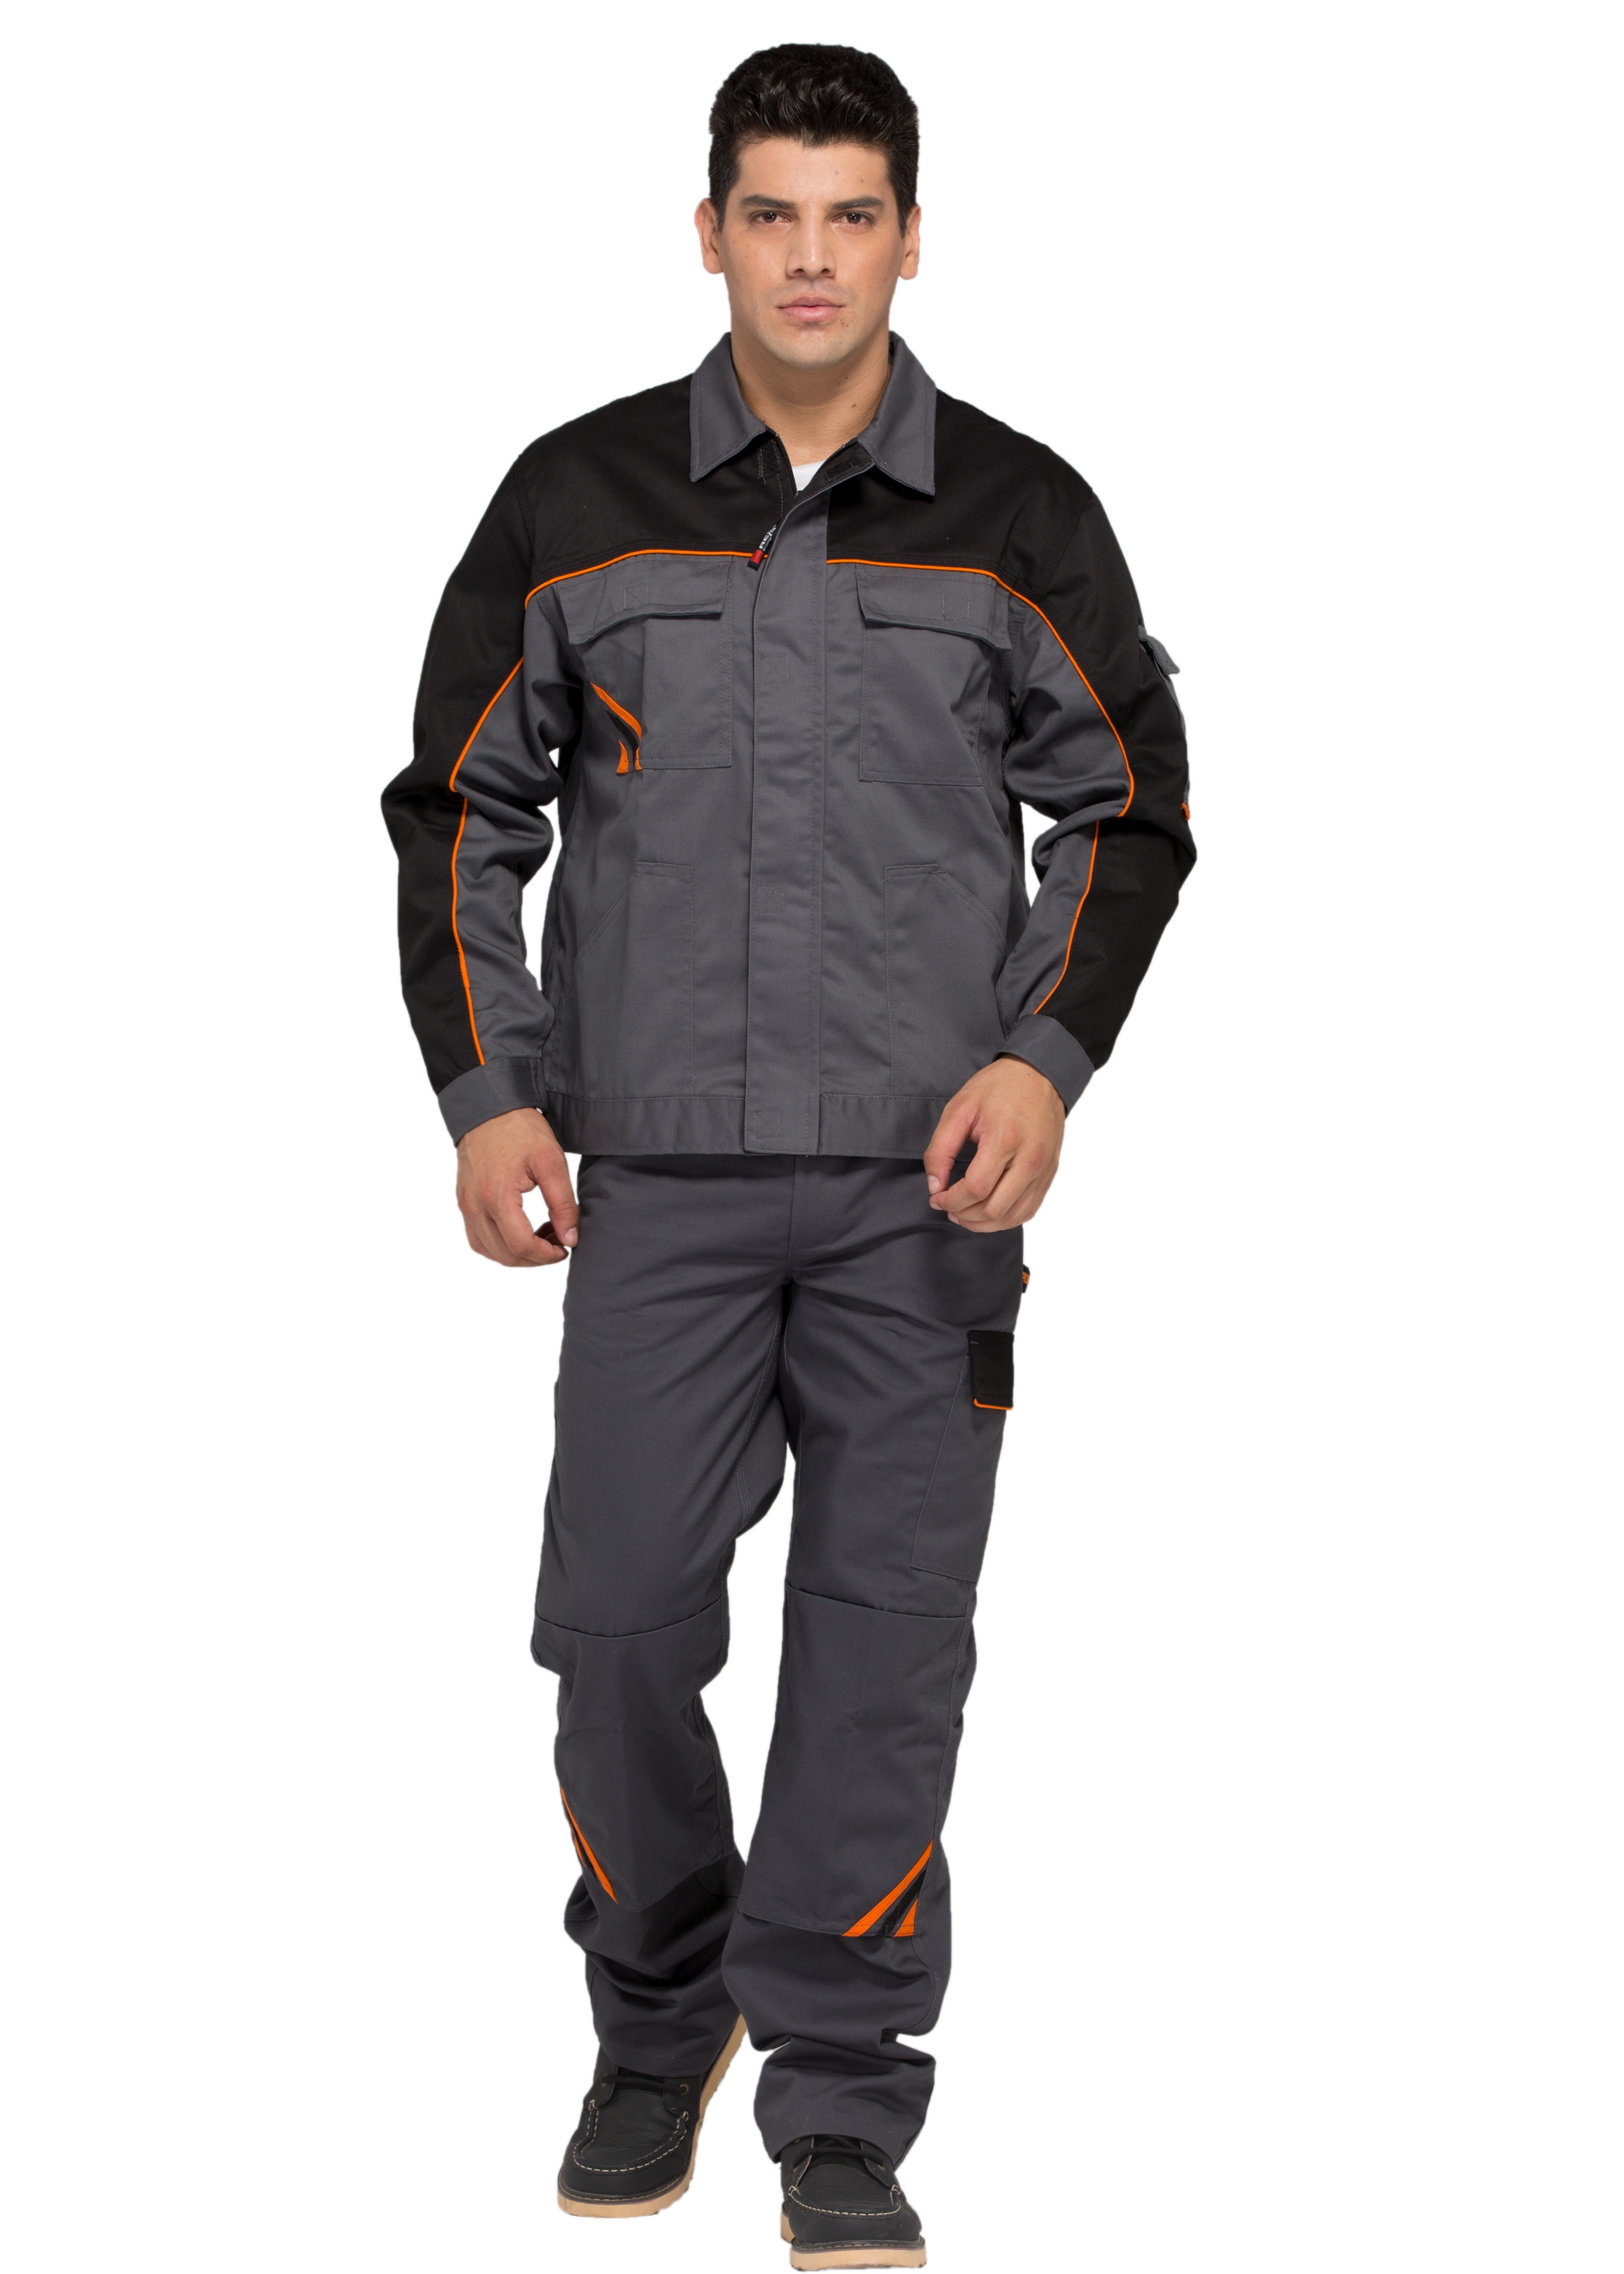 Praktische industrielle Arbeits-Uniform-PROjacke/Bibpants/Hose mit befestigten Klappen